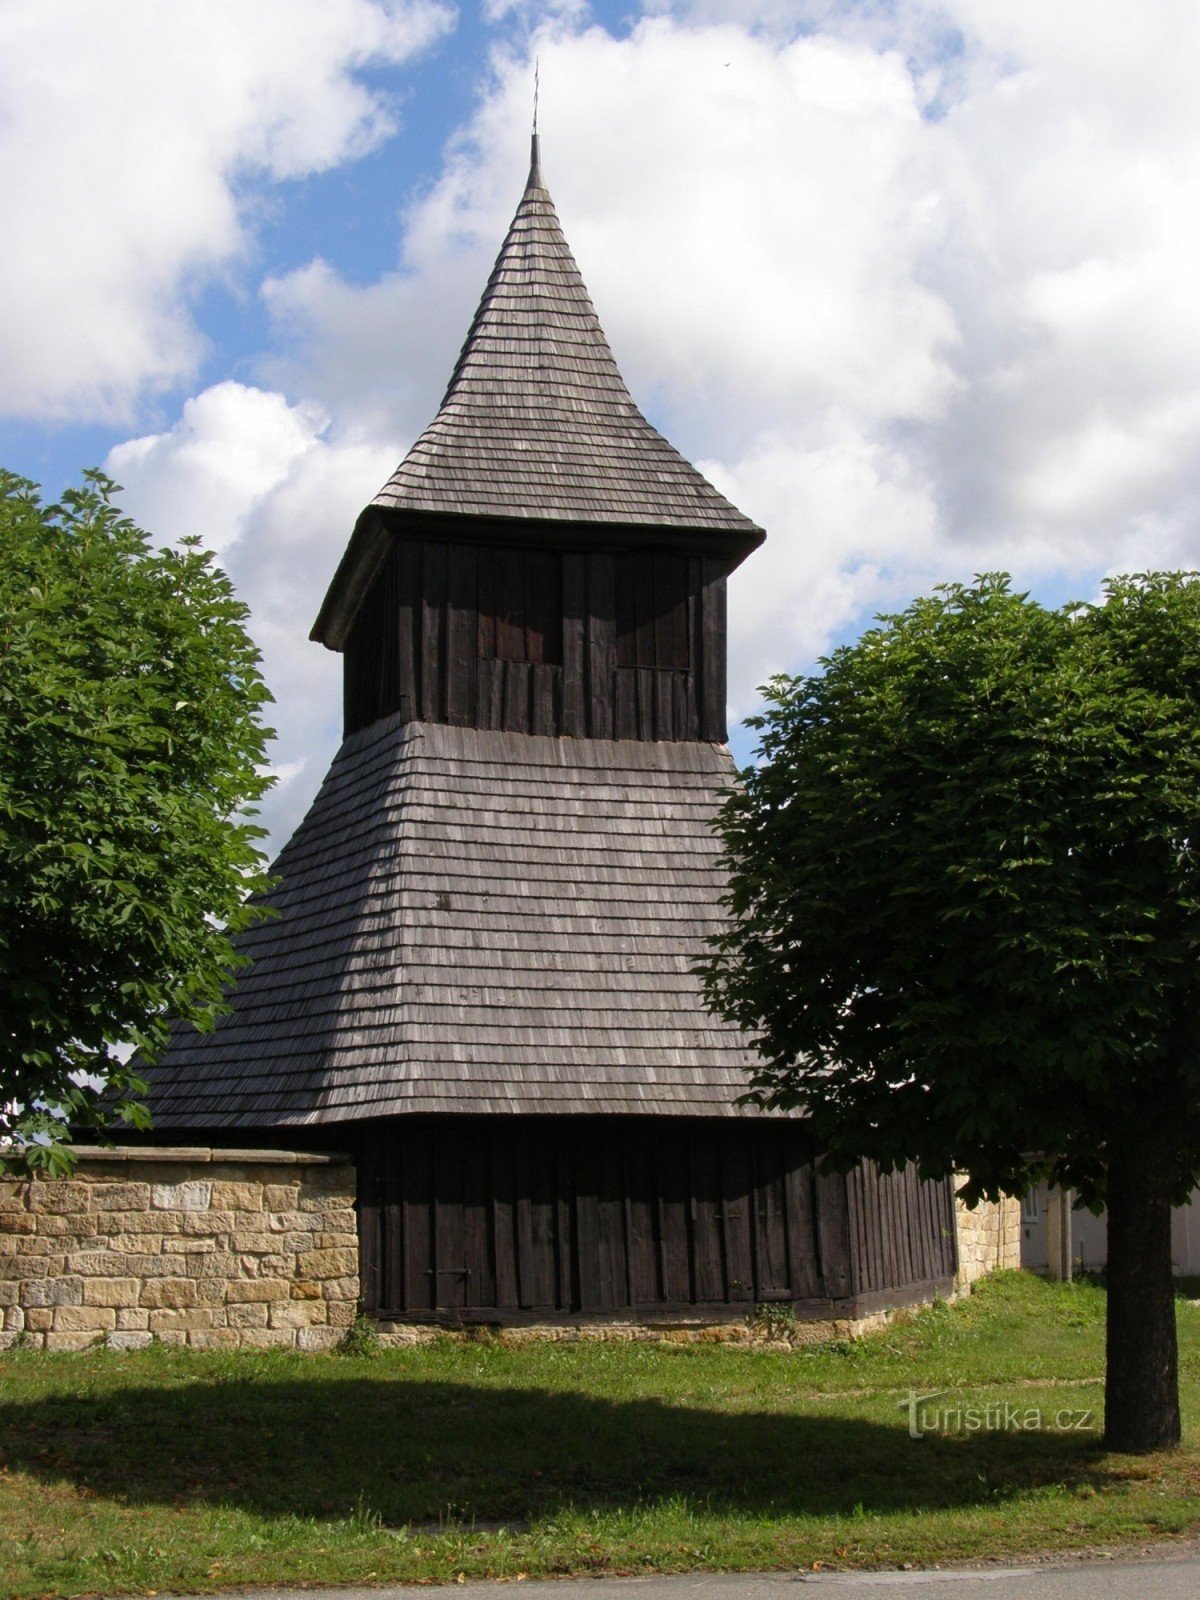 Vysočany - nhà thờ gỗ St. Chợ có tháp chuông